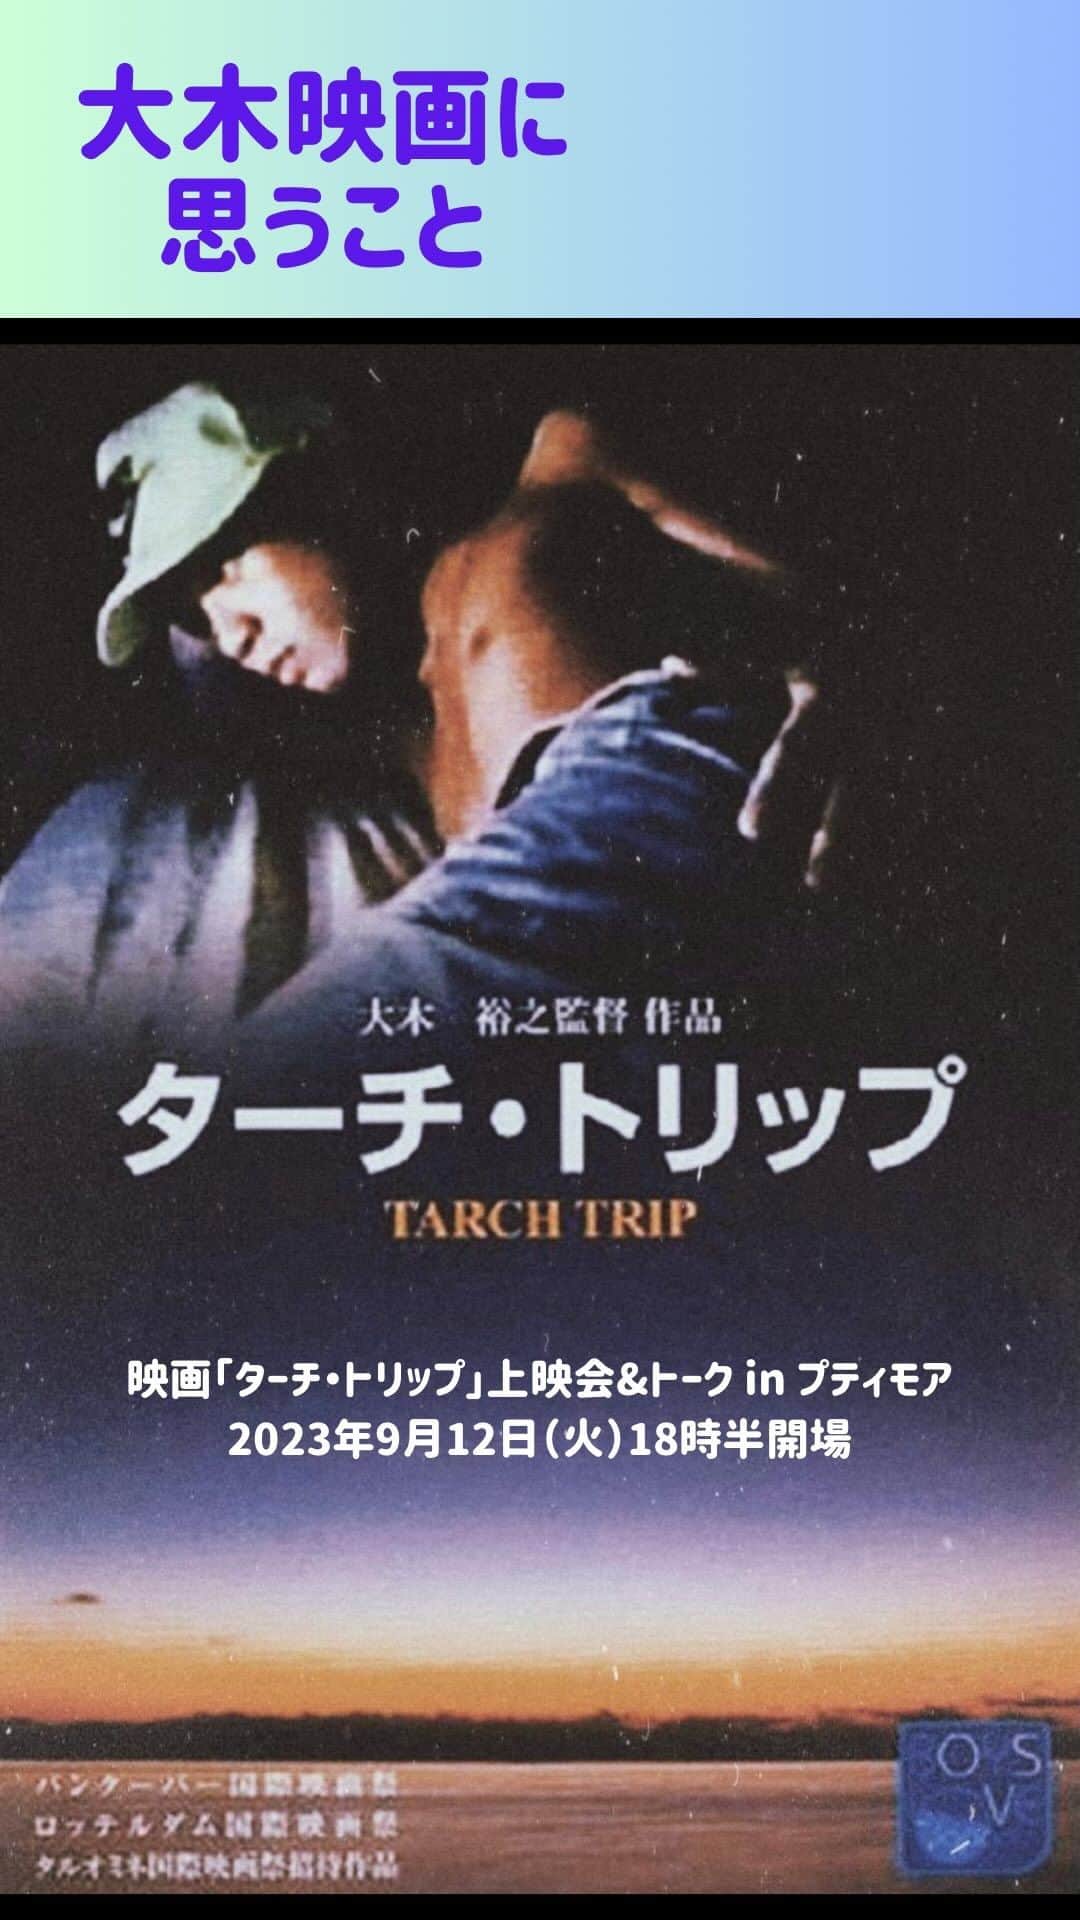 櫻田宗久のインスタグラム：「. 来週、プティモアで映画の上映会を開催します！ 大木裕之さんの「ターチ・トリップ」という作品です。 一緒にぜひ観ませんか？？  私の初めての大木作品との出会いはこの映画でした。 99年にドイツから日本に留学に来て、映画の研究をしていた男性からぜひ観てと紹介された本作。 観たその日から、大木映画のファンになっていました。 セリフがないのに、不思議と感情を掻き立てられ、高知の自然と町の中を、映画と一緒に旅をしているような気分になる。 この映画を、たくさんの人と一緒に共有したいと思い企画しました。 櫻田宗久  大木裕之展「レベル17」at星男　開催記念 映画「ターチ・トリップ」上映会&トーク in プティモア 2023年9月12日（火）18時半開場  「ターチ・トリップ」  大木裕之が独特の映像美と個性でその名を世界へと知らしめた代表作。 ある少年が自分の部屋から見下ろした街へ、何かに惹かれるように放浪し始める。そこで彼が体験したものとは。  <キャスト>片岡忠之／森仁／相馬立夫／大木裕之／八松正光／植竹和彦／吉川貴士 1993年  日程： 2023/09/12 時間： OPEN 18:30 START 19:00 映画上映は19:30より 出演： 大木裕之  司会　櫻田宗久  料金： ADV ￥2,500/ DOOR￥3,000（ともに1d¥700別途） チケット： 予約フォーム https://petitmoa.jp/5108/  PetitMOAプティモア 〒160-0021 東京都新宿区歌舞伎町2-19-10 B1 https://petitmoa.jp/ TEL/FAX：03-6265-9014」